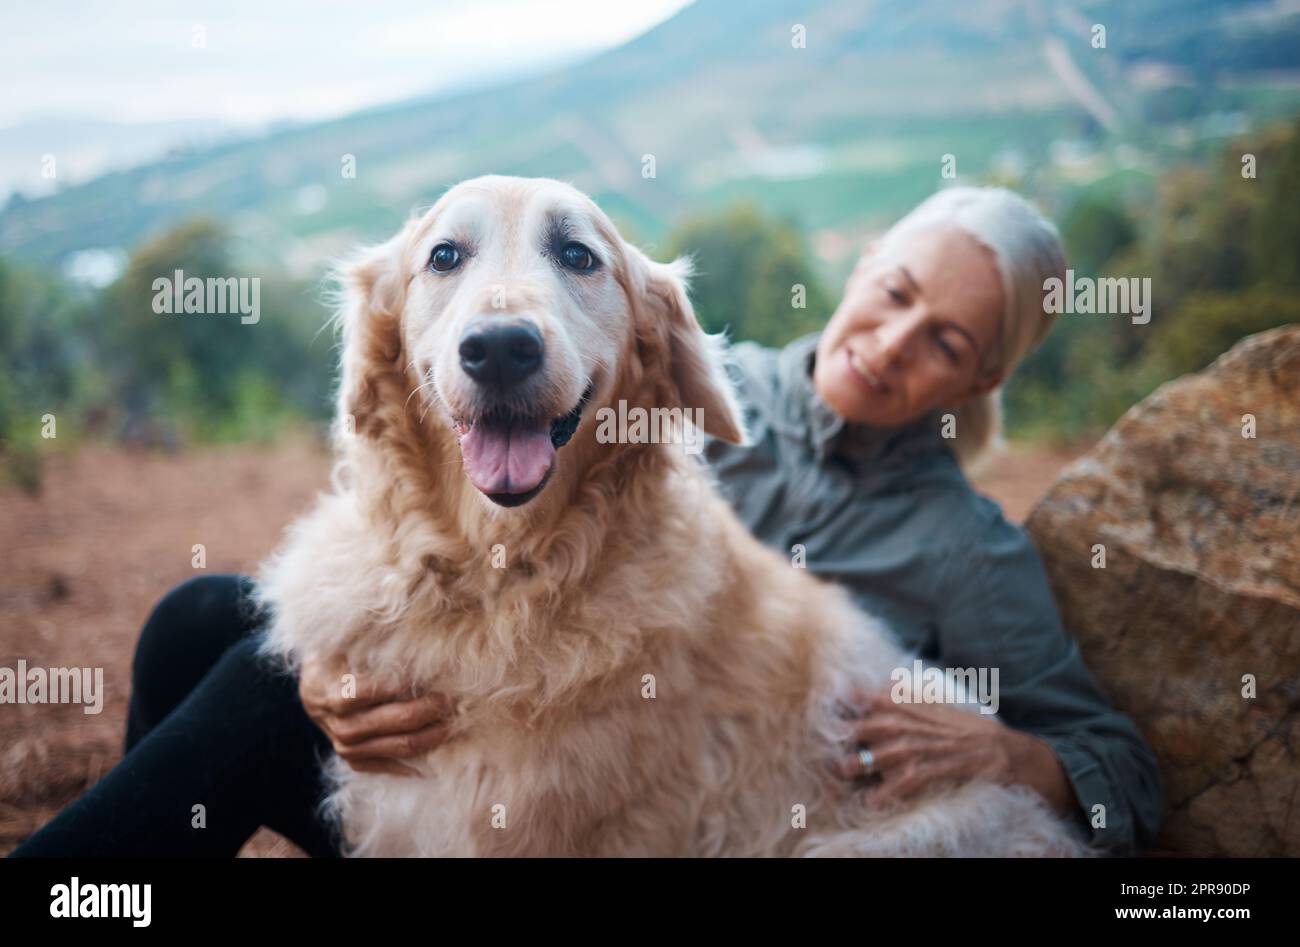 Ihn in meinem Leben zu haben hilft mir, aktiver zu sein. Eine ältere Frau macht mit ihrem Hund eine Wanderung. Stockfoto